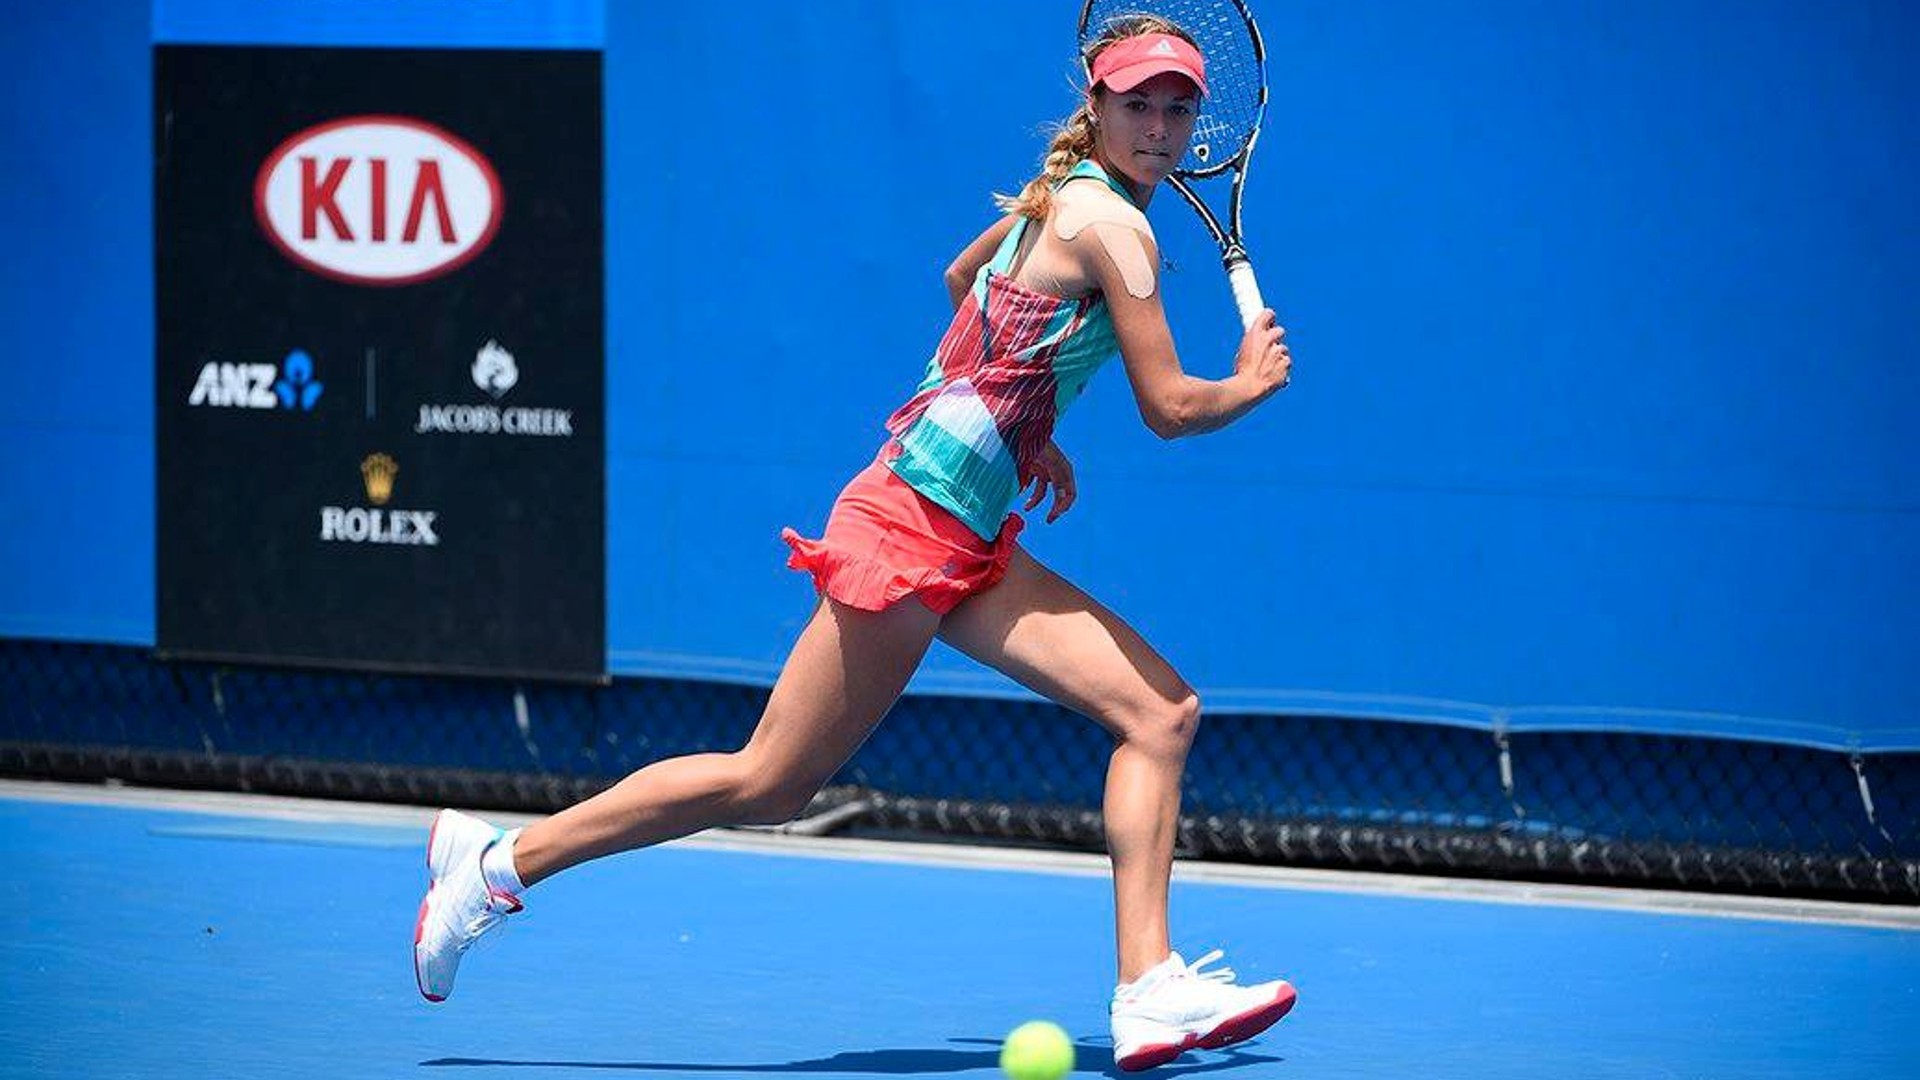 Anna Kalinskaya, Tennis, Skirt Wallpaper